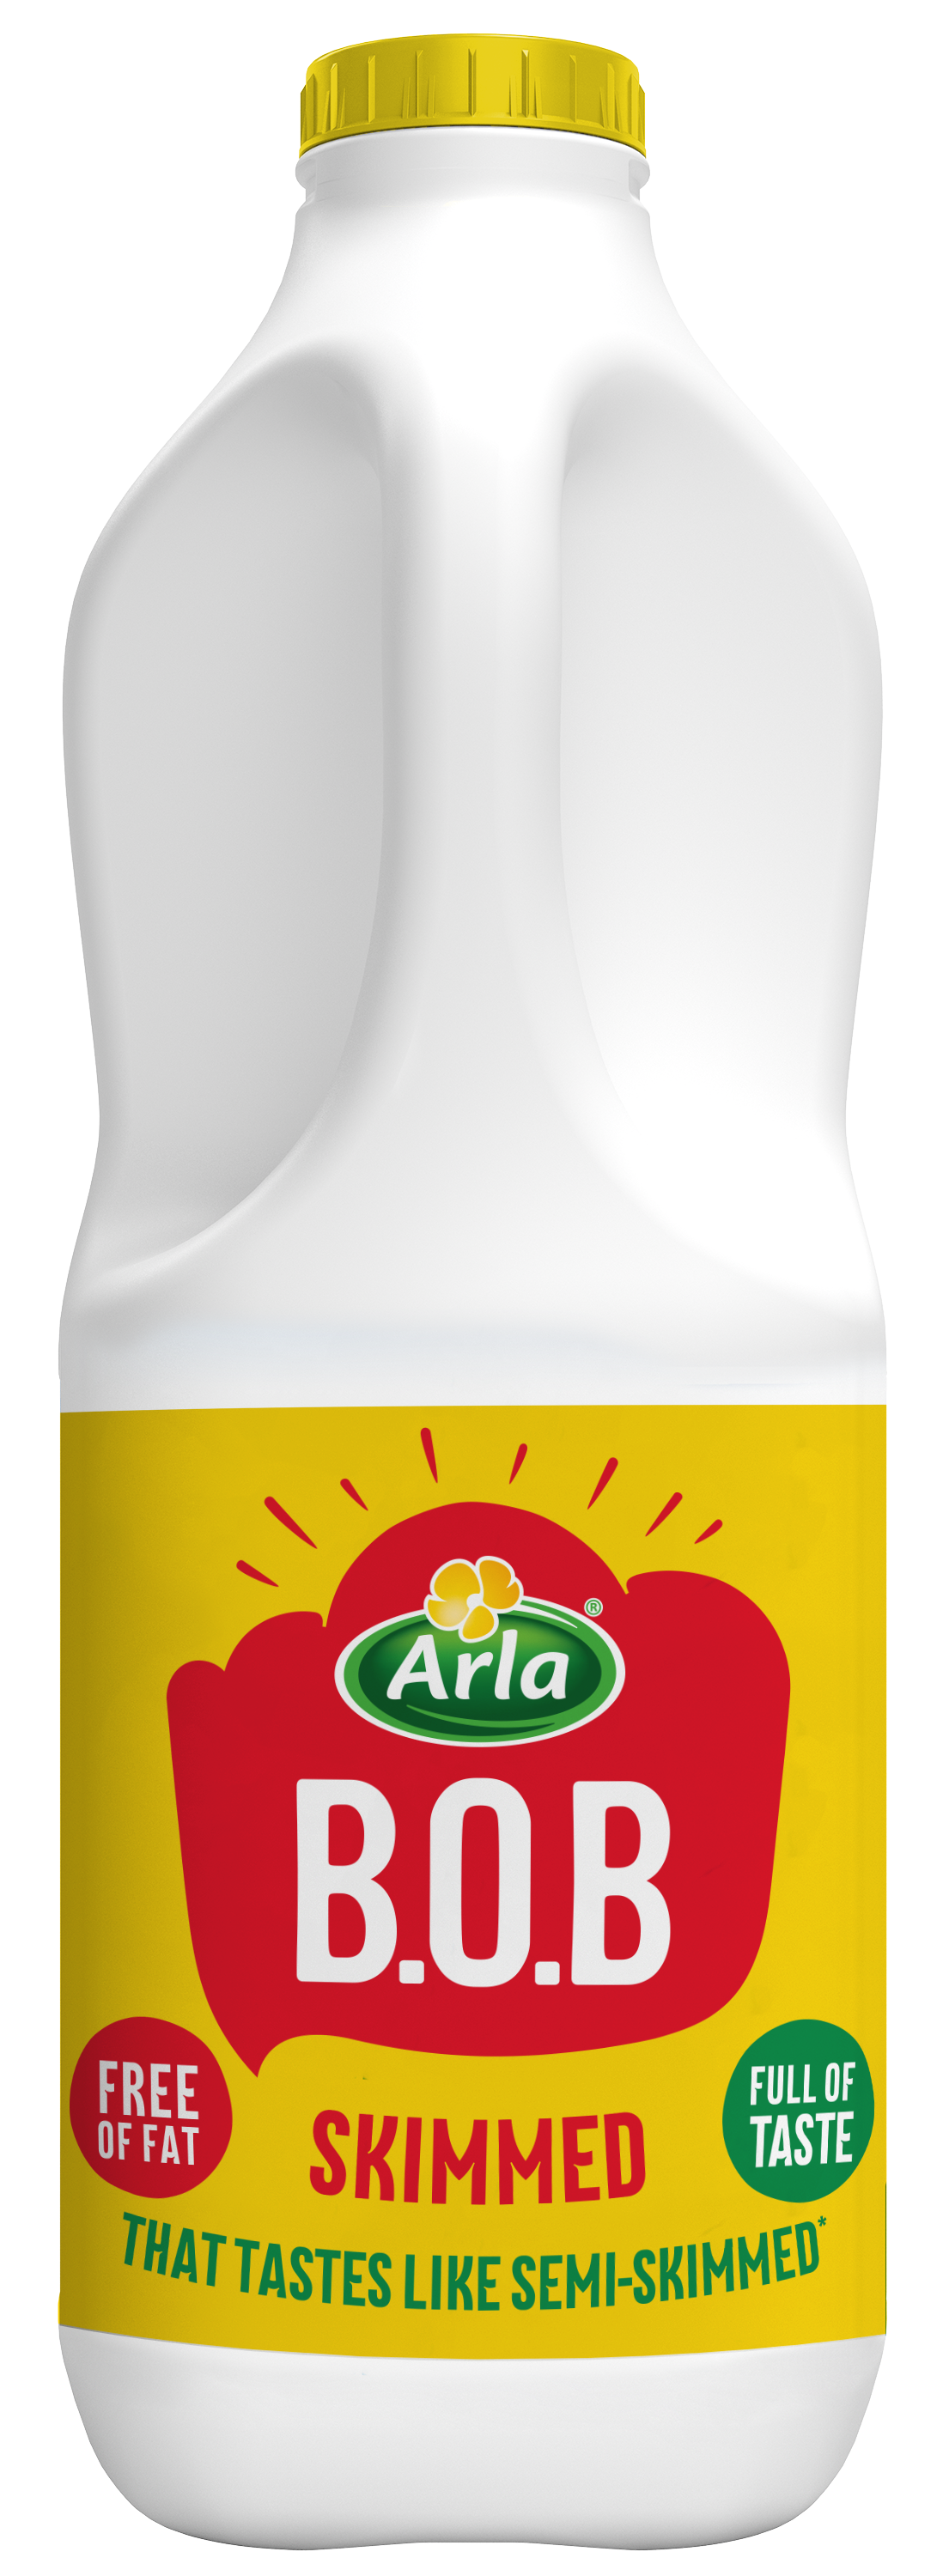 Arla B.O.B. Skimmed milk